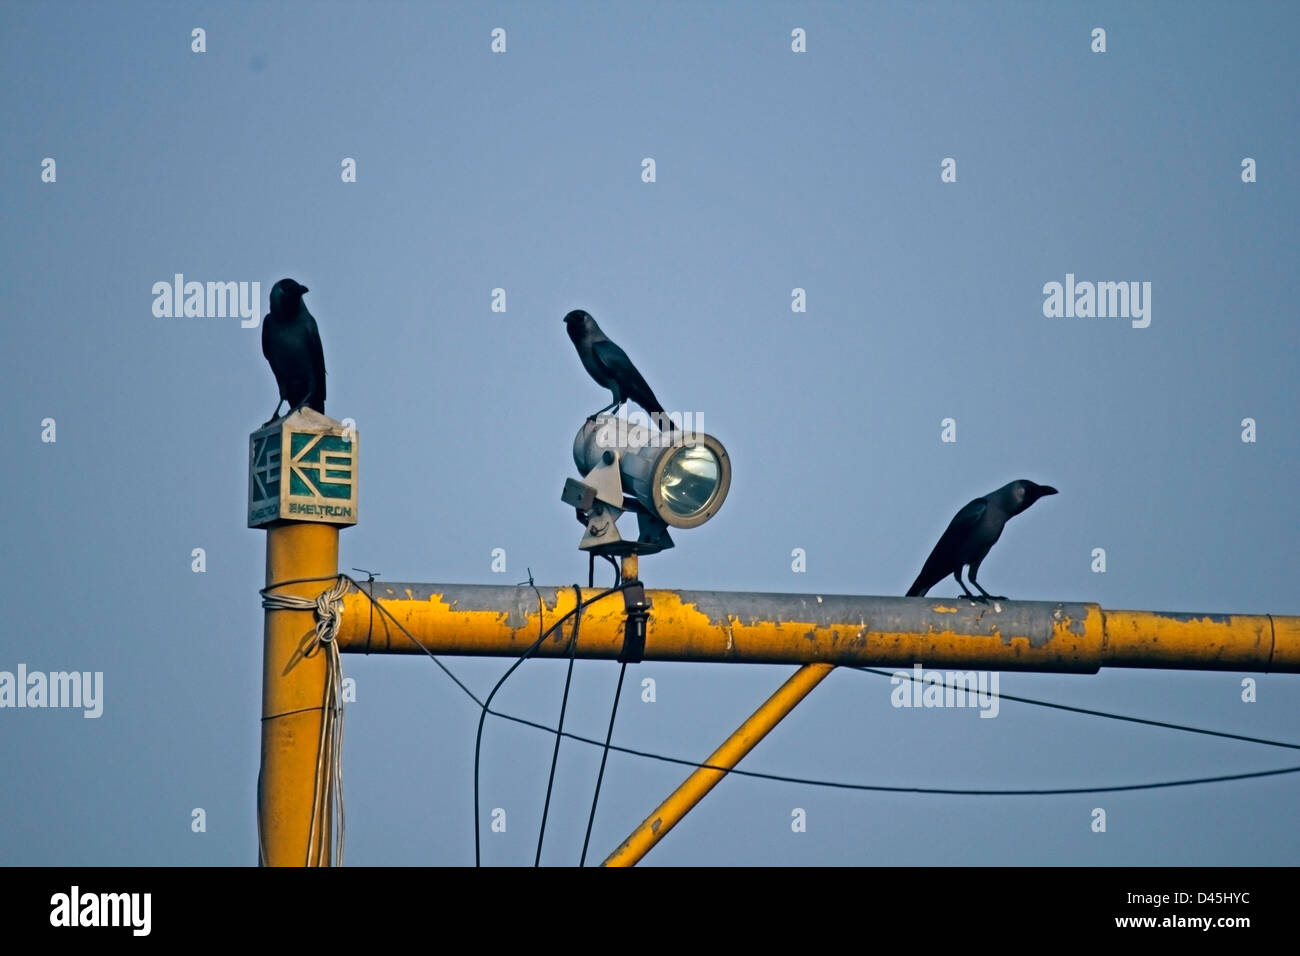 House Crow, Corvus splendens Stock Photo